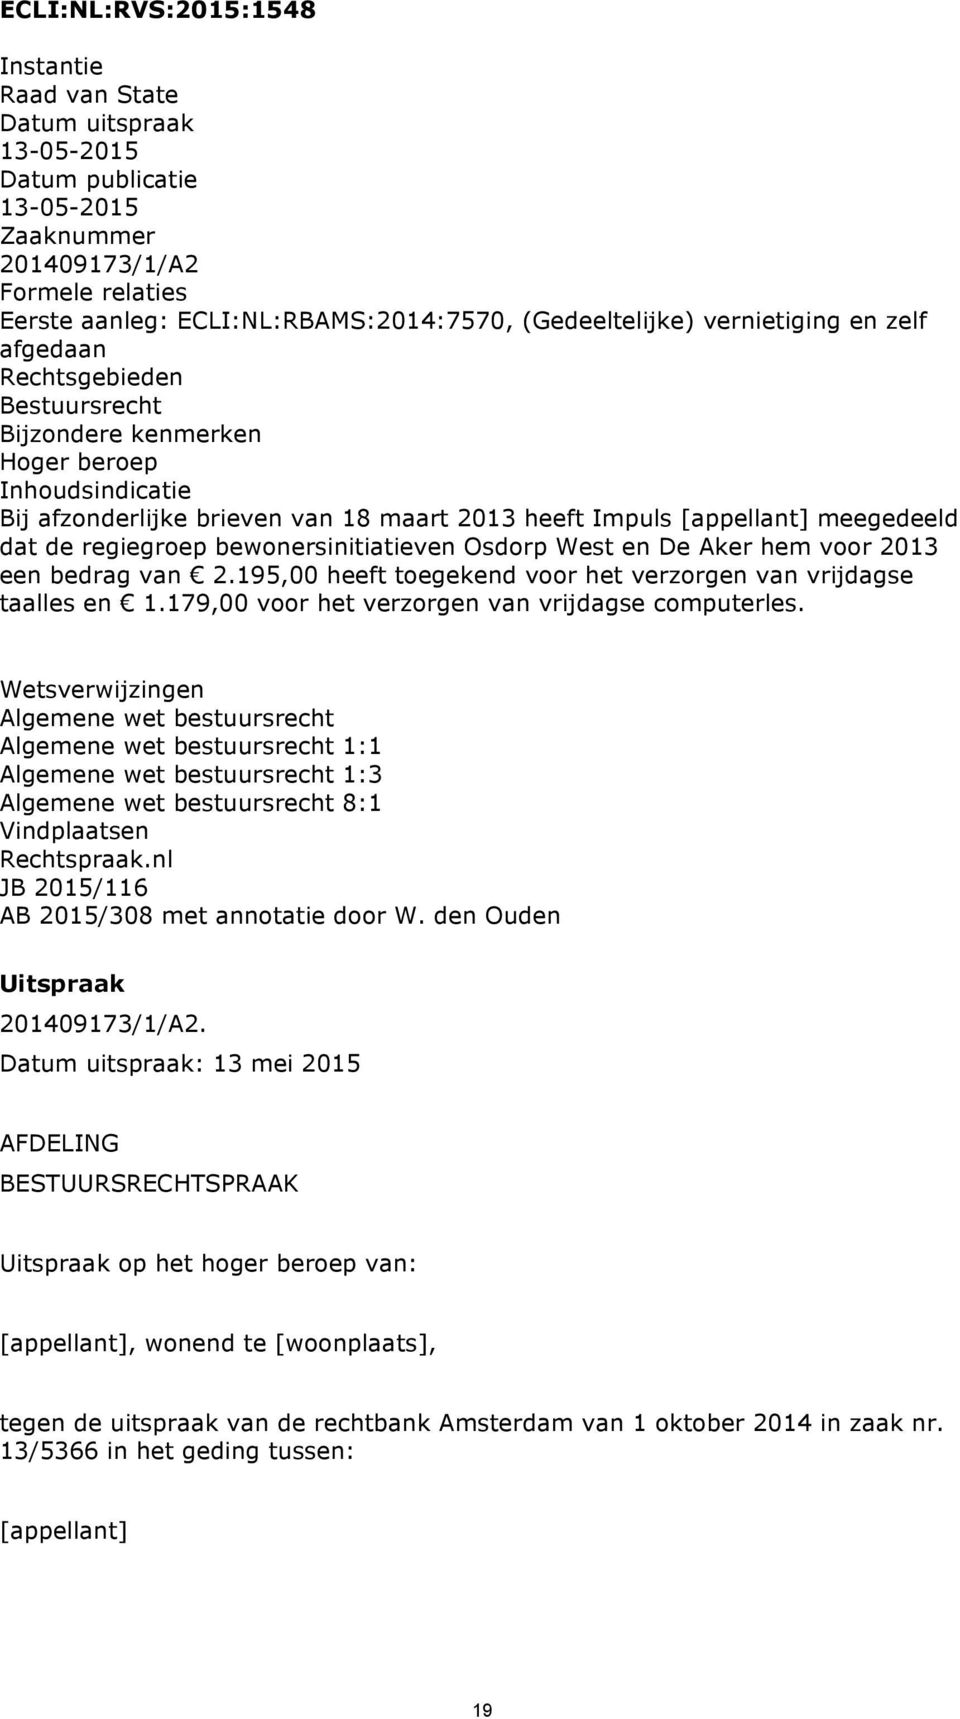 meegedeeld dat de regiegroep bewonersinitiatieven Osdorp West en De Aker hem voor 2013 een bedrag van 2.195,00 heeft toegekend voor het verzorgen van vrijdagse taalles en 1.